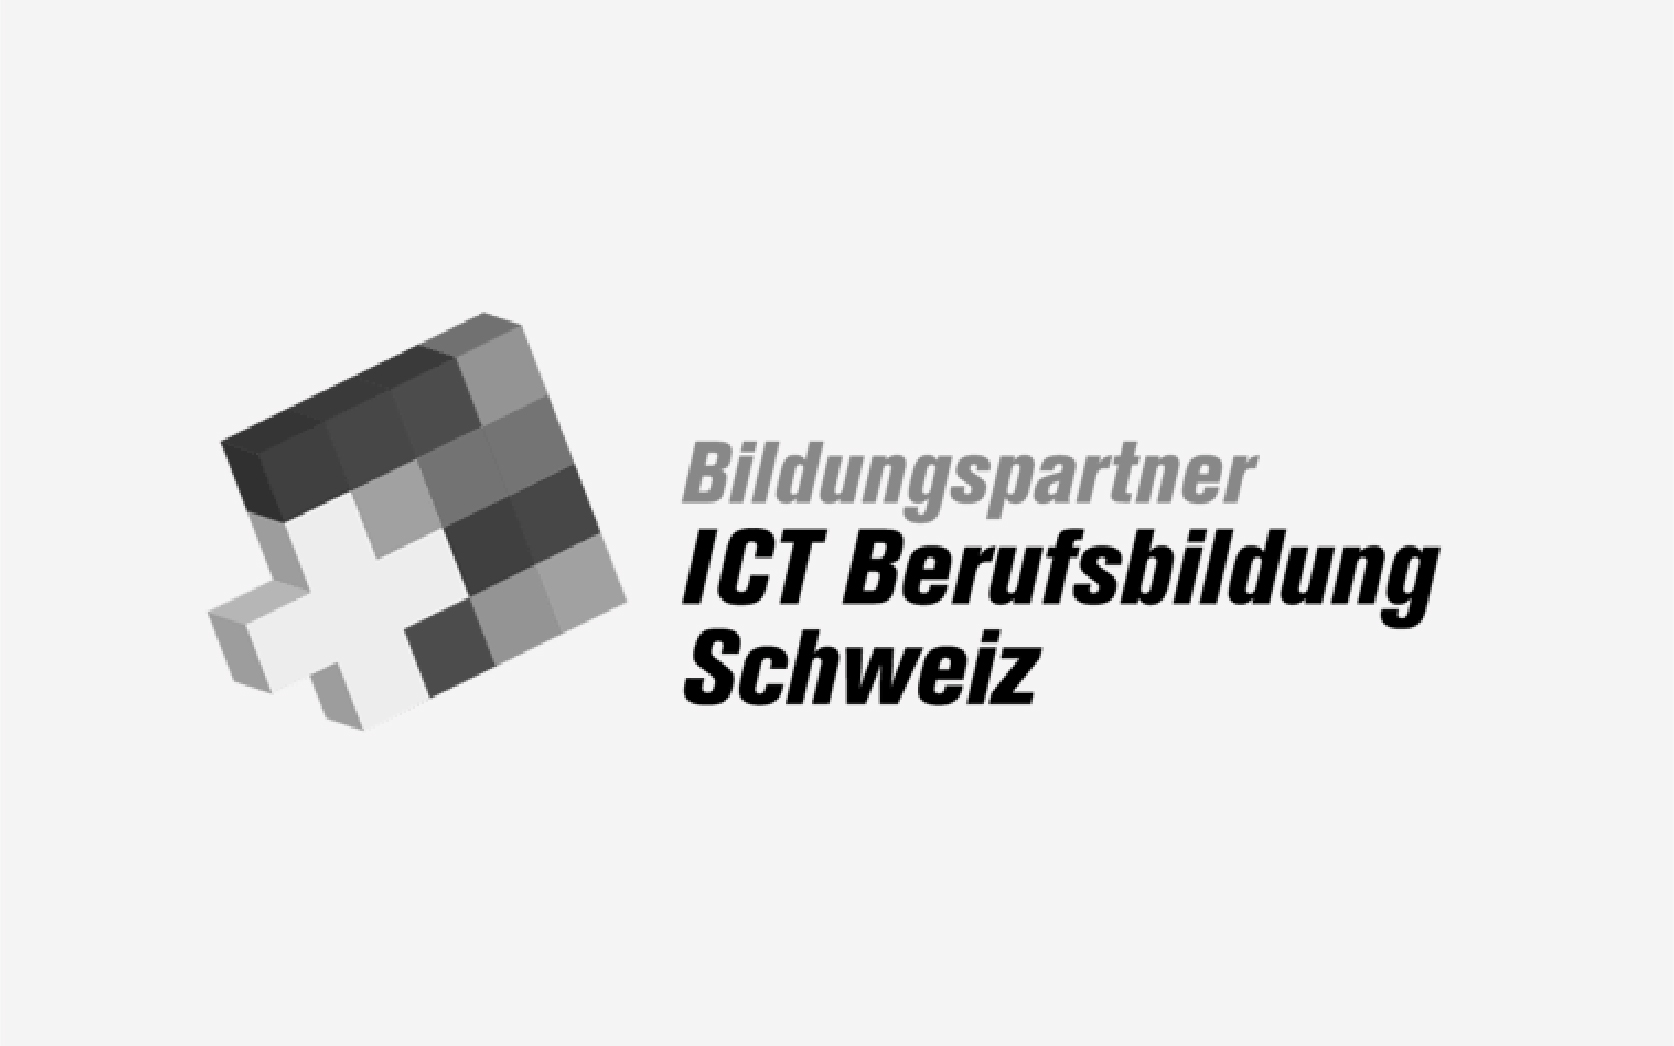 ICT Berufsbildung - wir investieren in die Zukunft und das duale Modell der Schweiz.